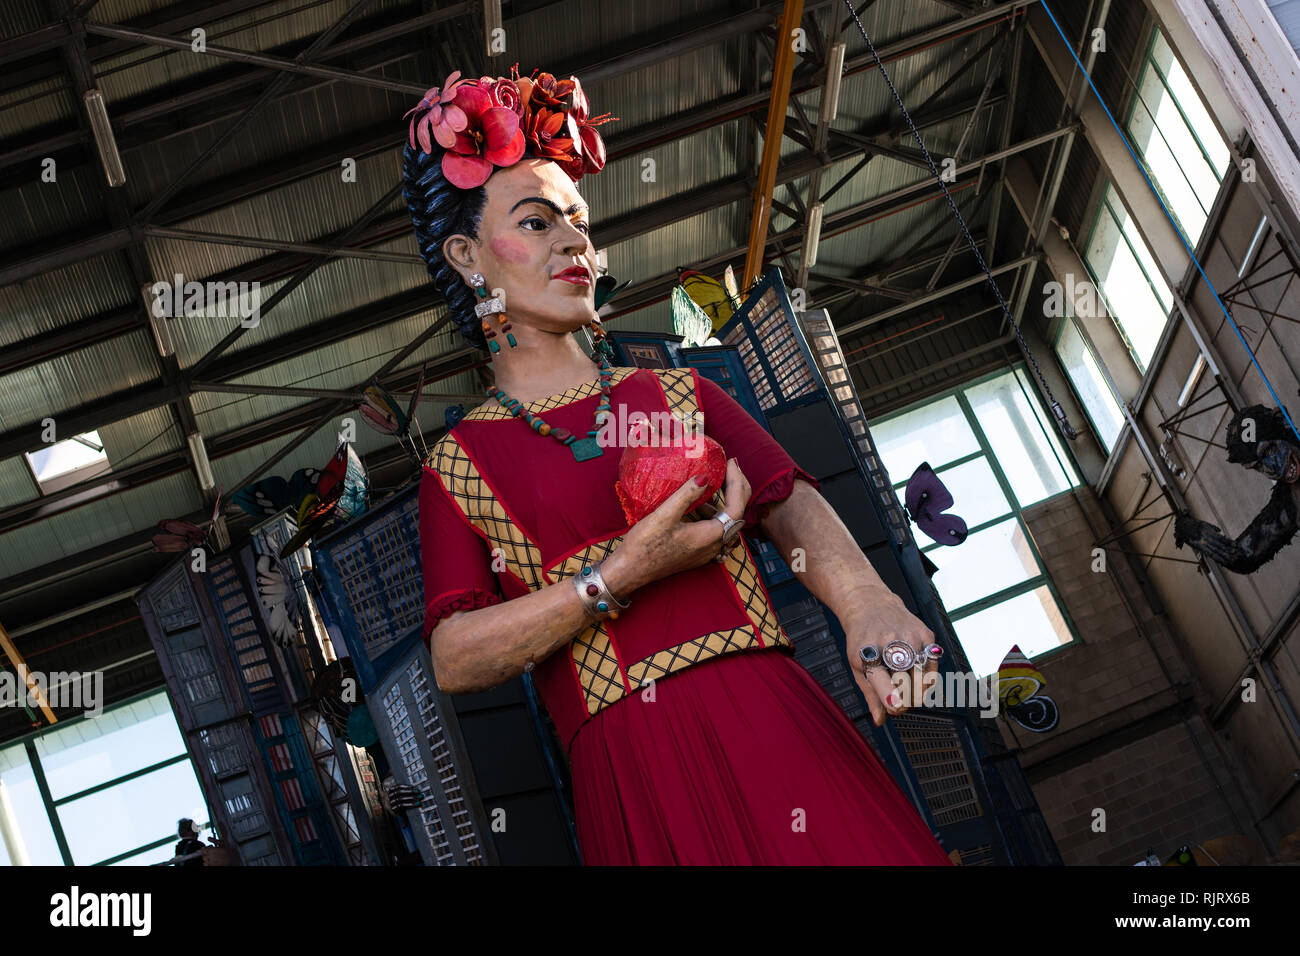 Viareggio, Italien. Februar 2019. Die Riesenschwollen des Karnevals von Viareggio stellen Frida kahlo dar. Kredit: Stefano Dalle Luche/Alamy Live News Stockfoto